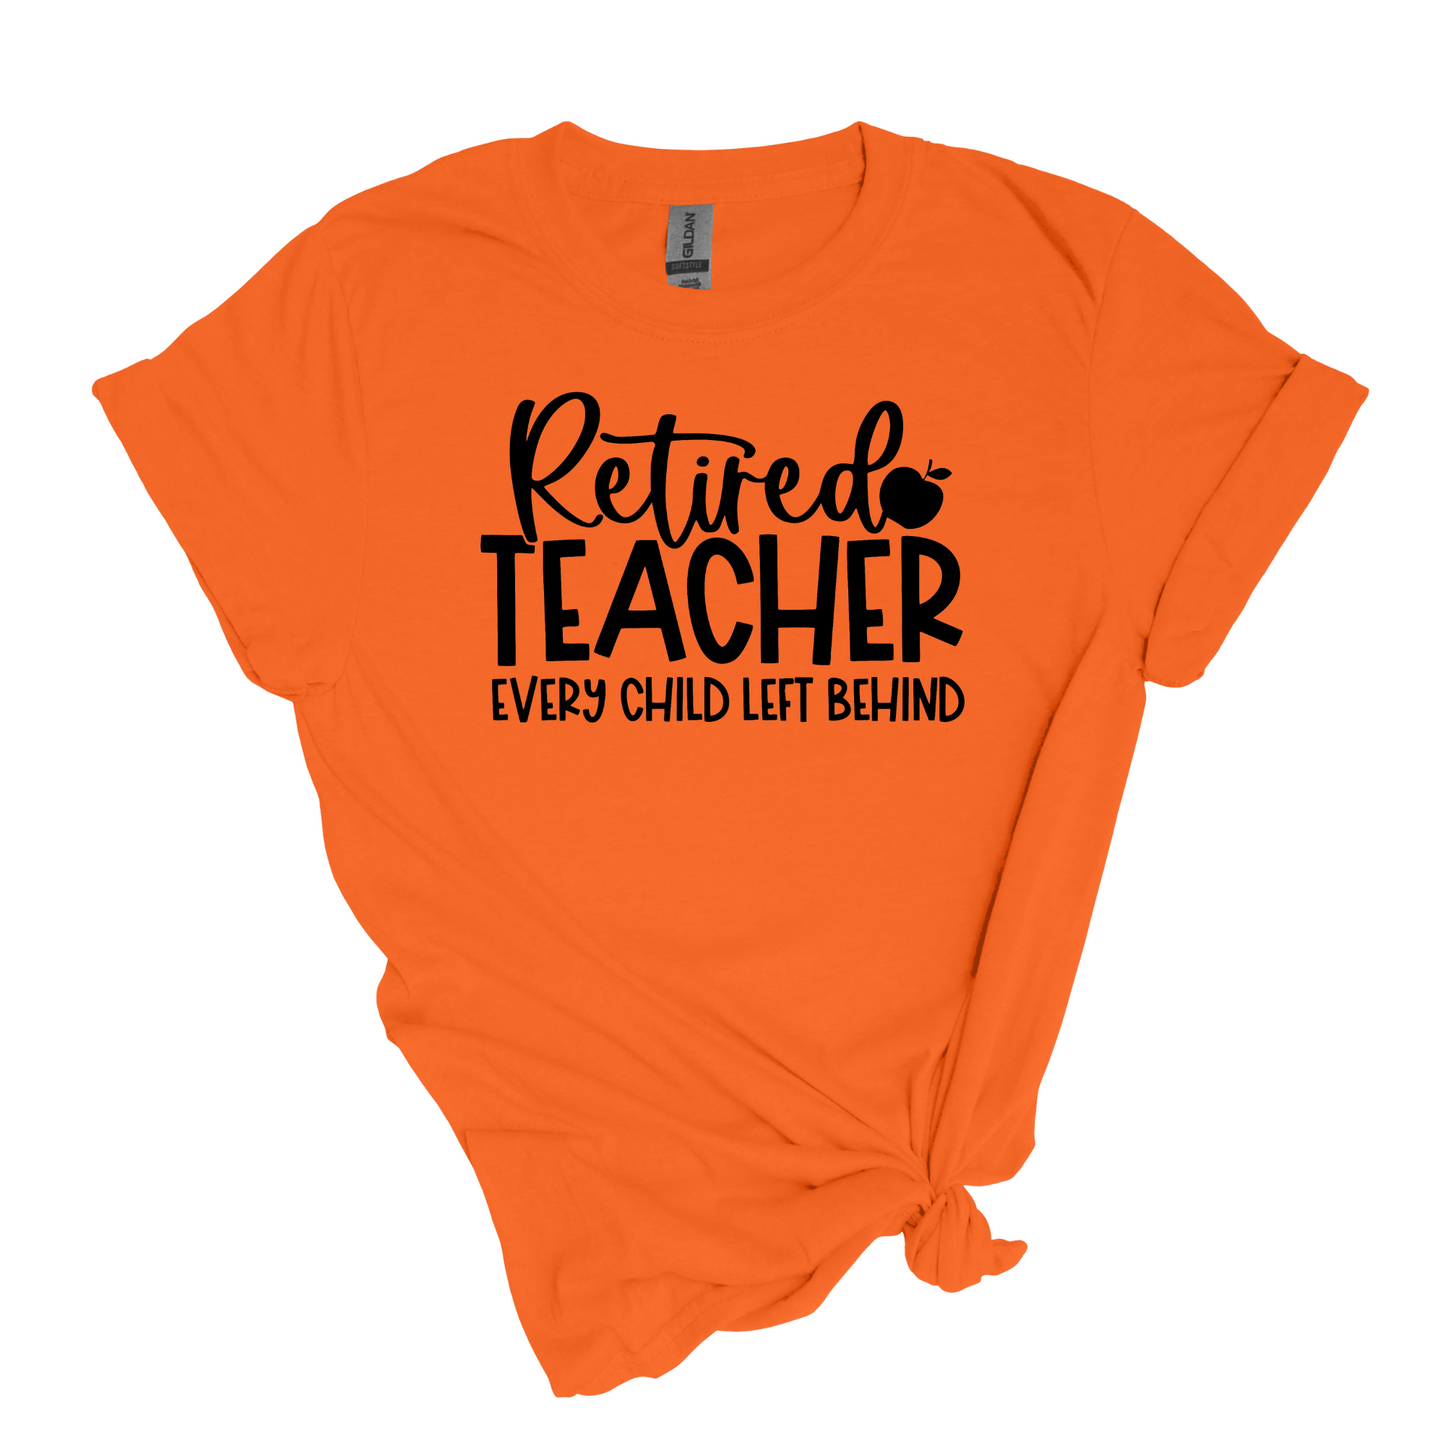 Enseignant à la retraite - Chaque enfant laissé pour compte 😆 - T-shirt doux unisexe adulte 